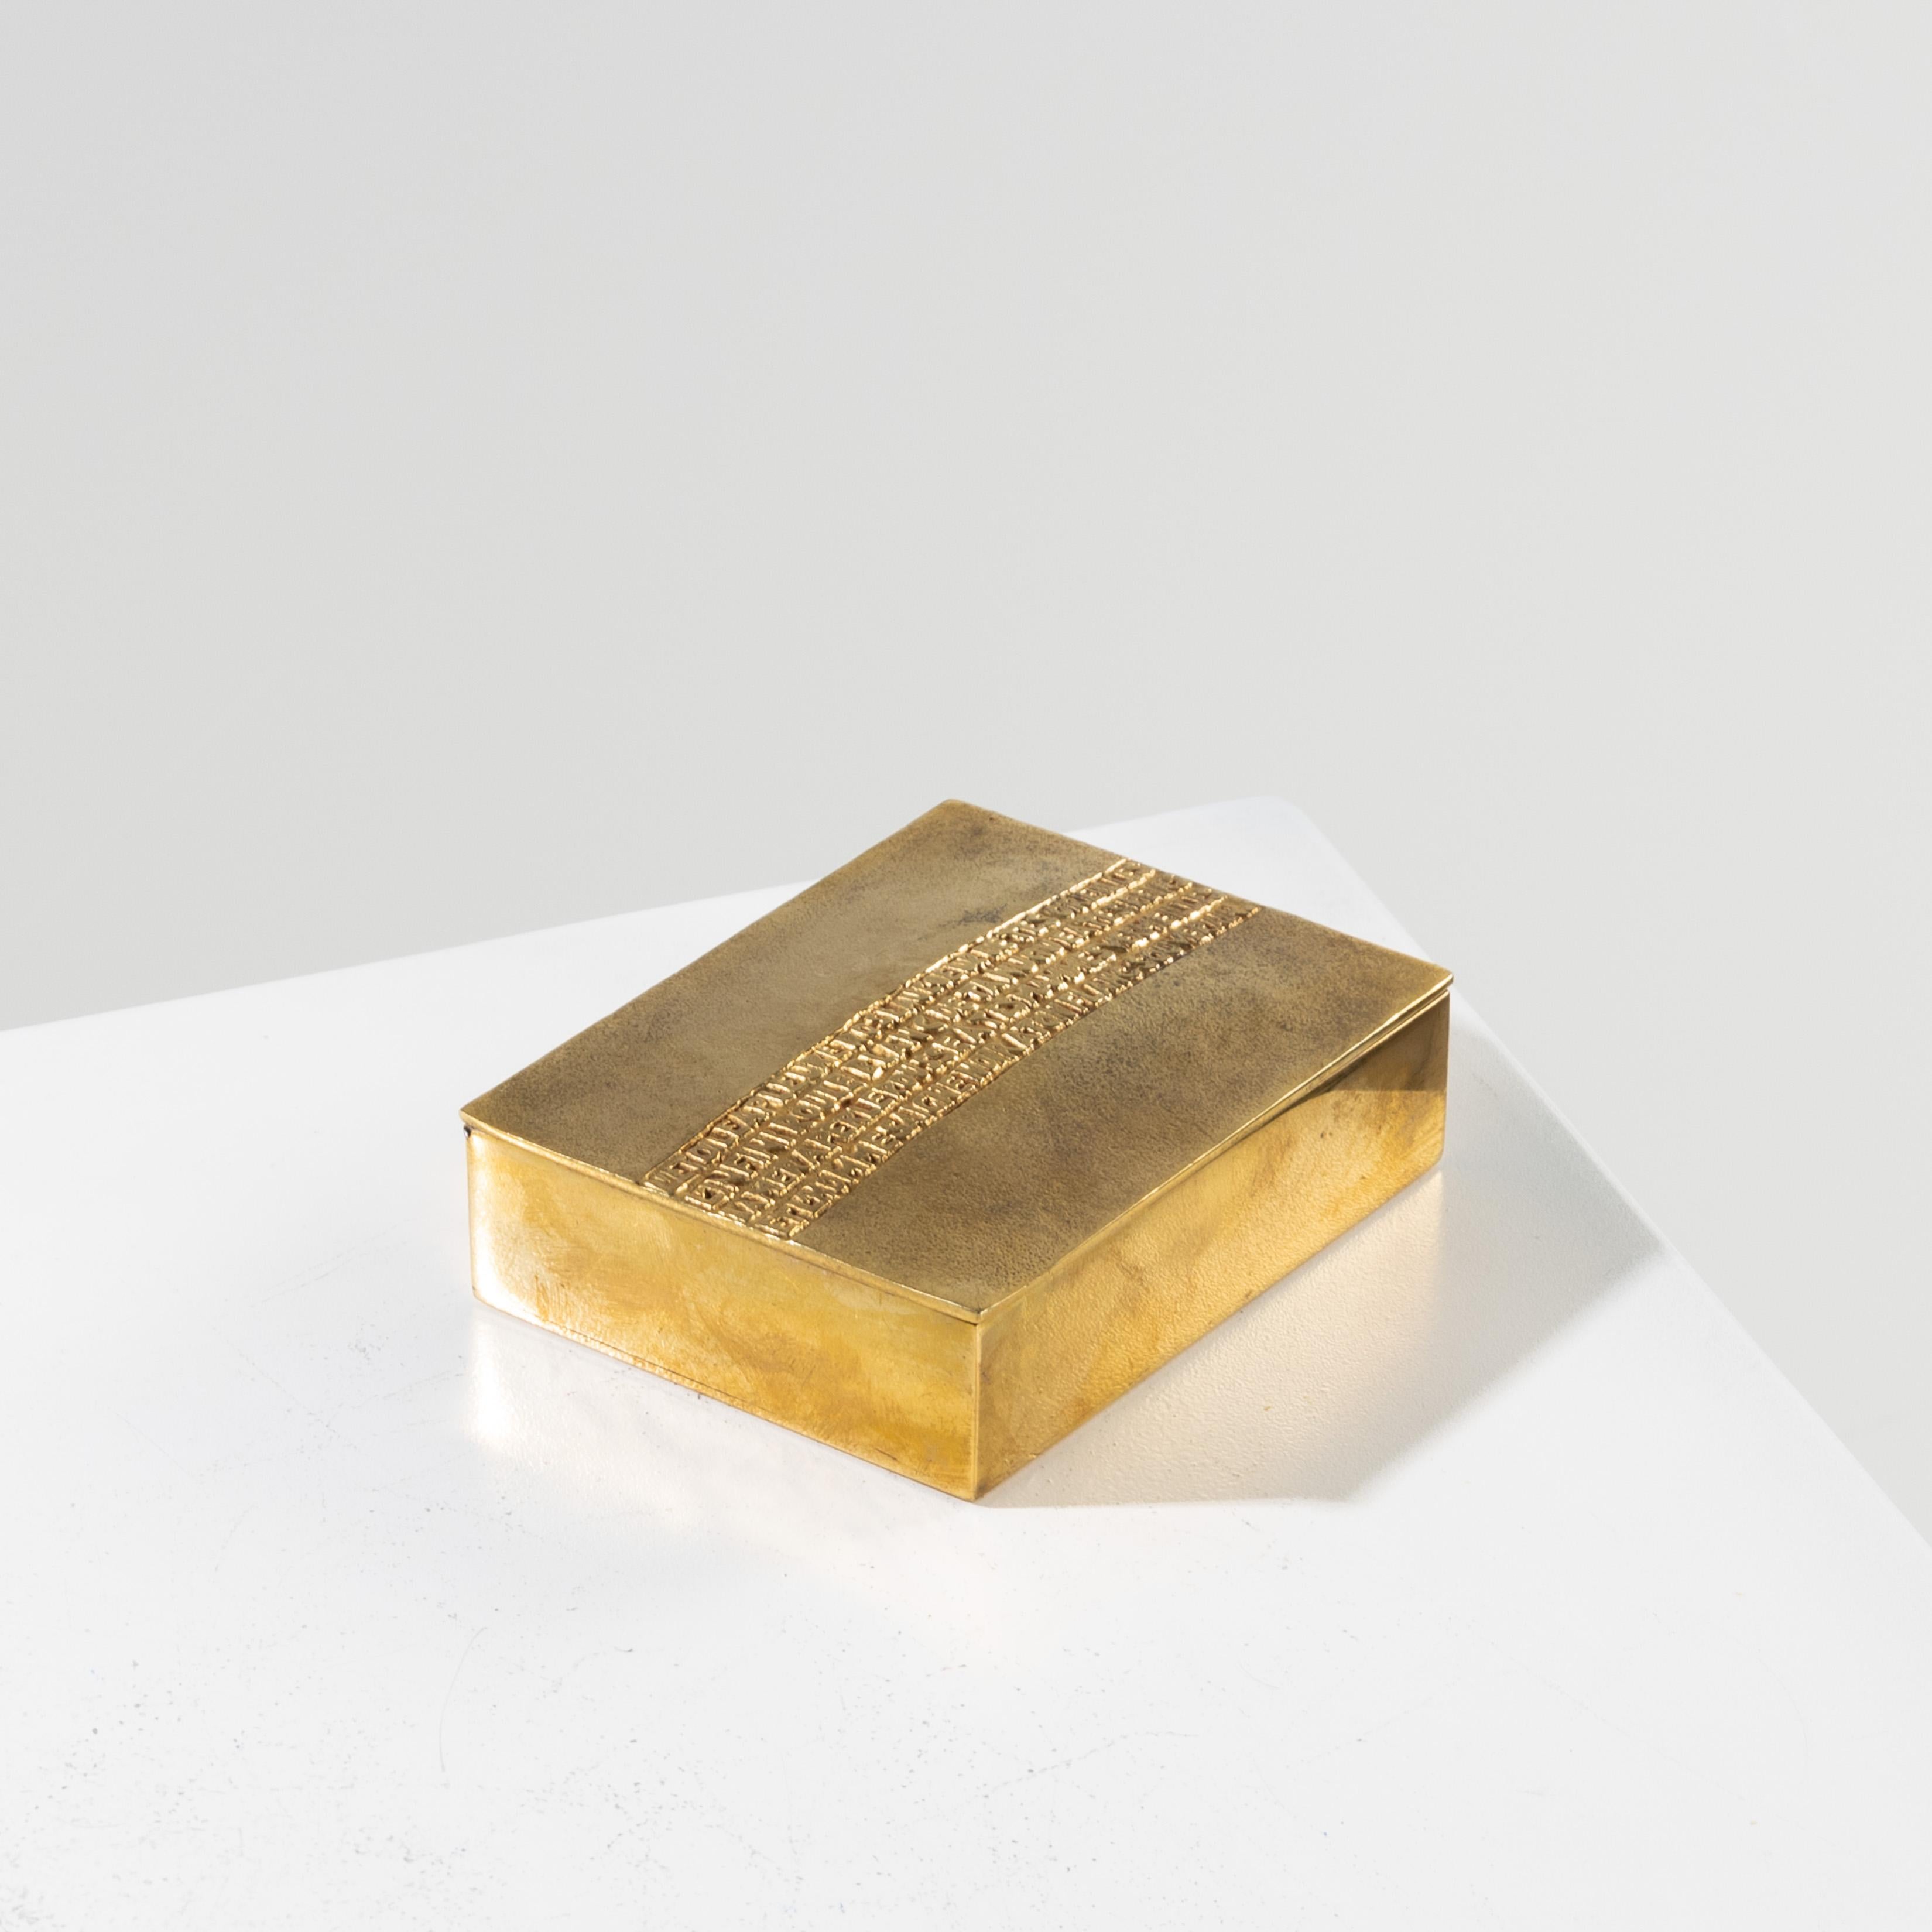 L’étoile a pleuré rose by Line Vautrin - Rare gilded bronze box For Sale 2